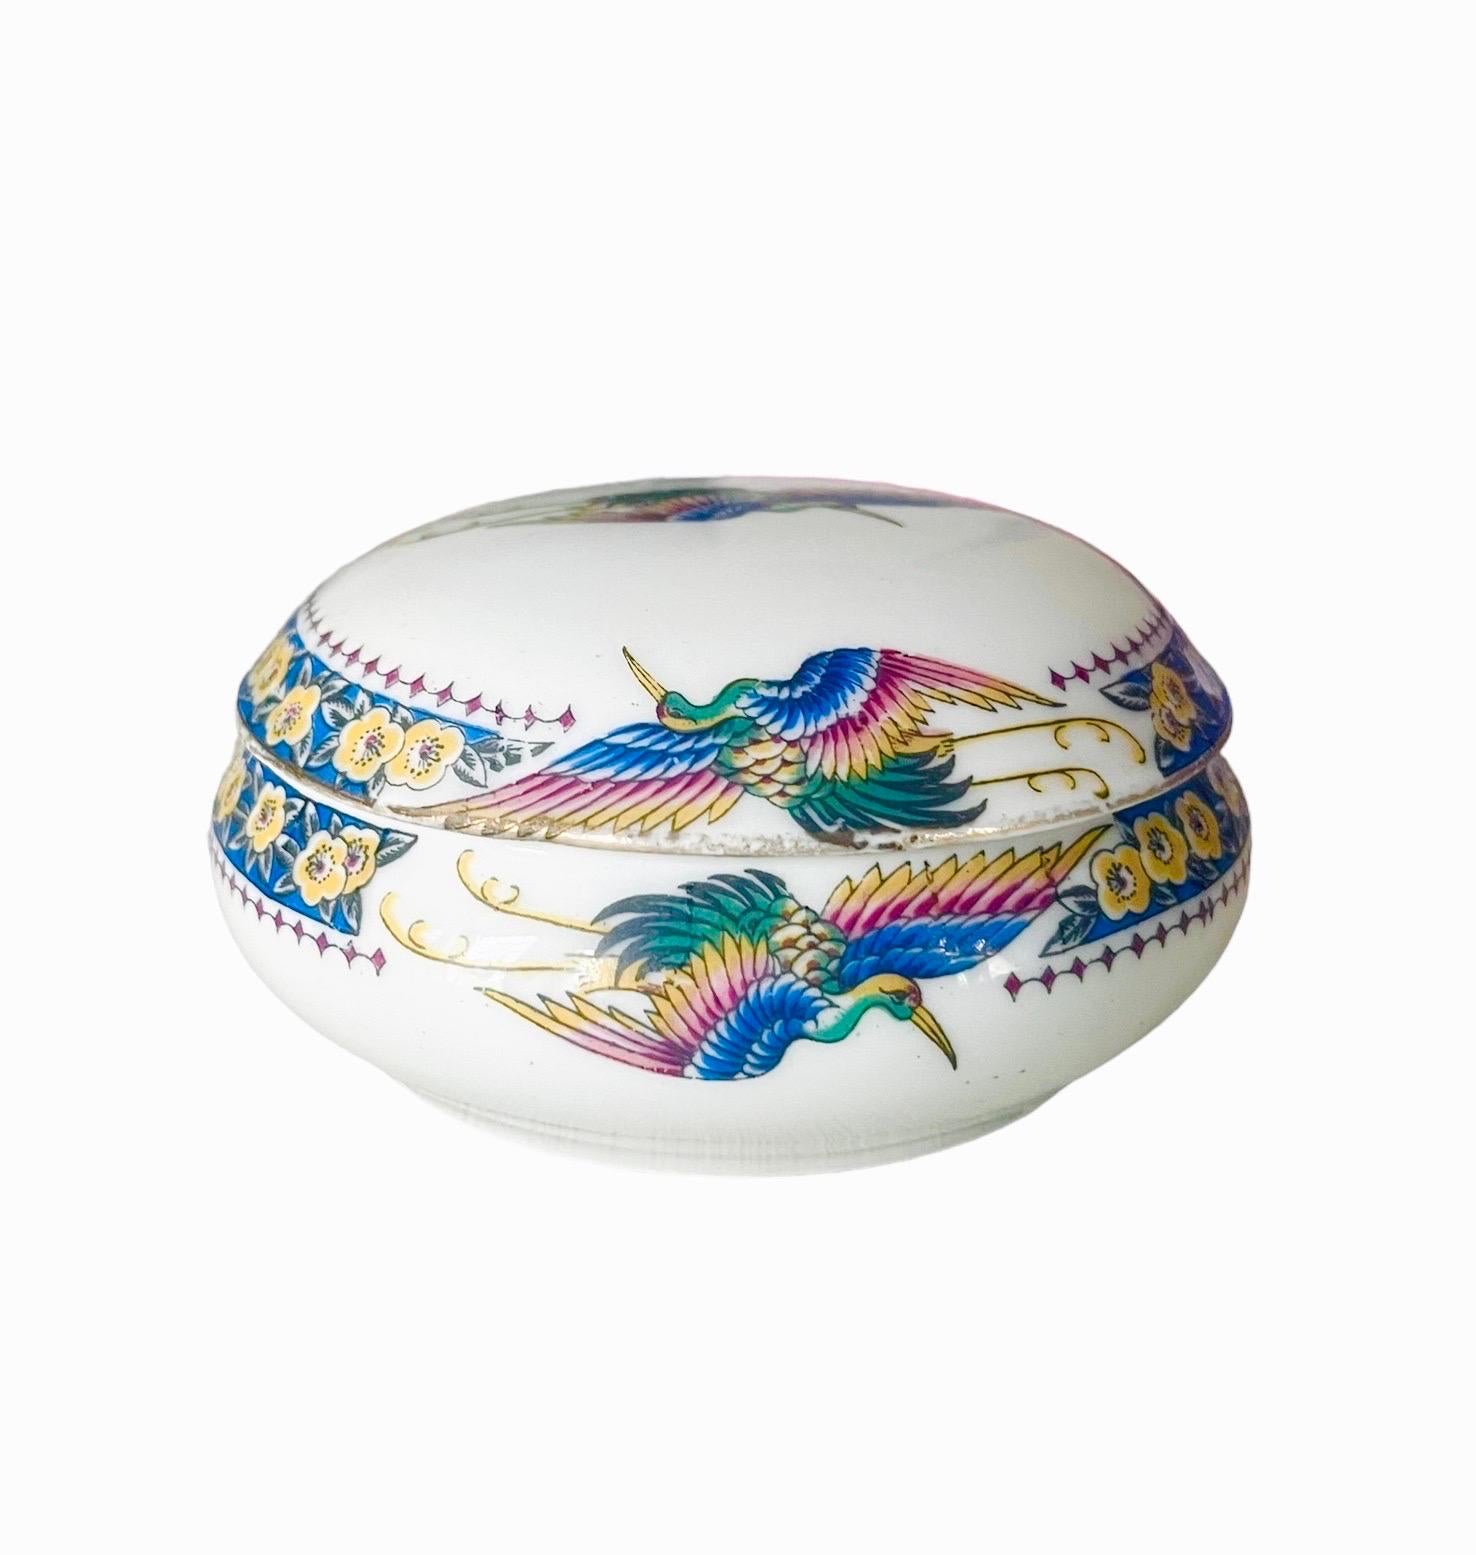 Très jolie et ancienne boîte ou bonbonnière avec couvercle en porcelaine de Limoges à décor d'oiseaux multicolores. Les oiseaux représentés sont des paons. Les bords du couvercle et de la boîte sont décorés d'une frise de fleurs bleues.
Le couvercle